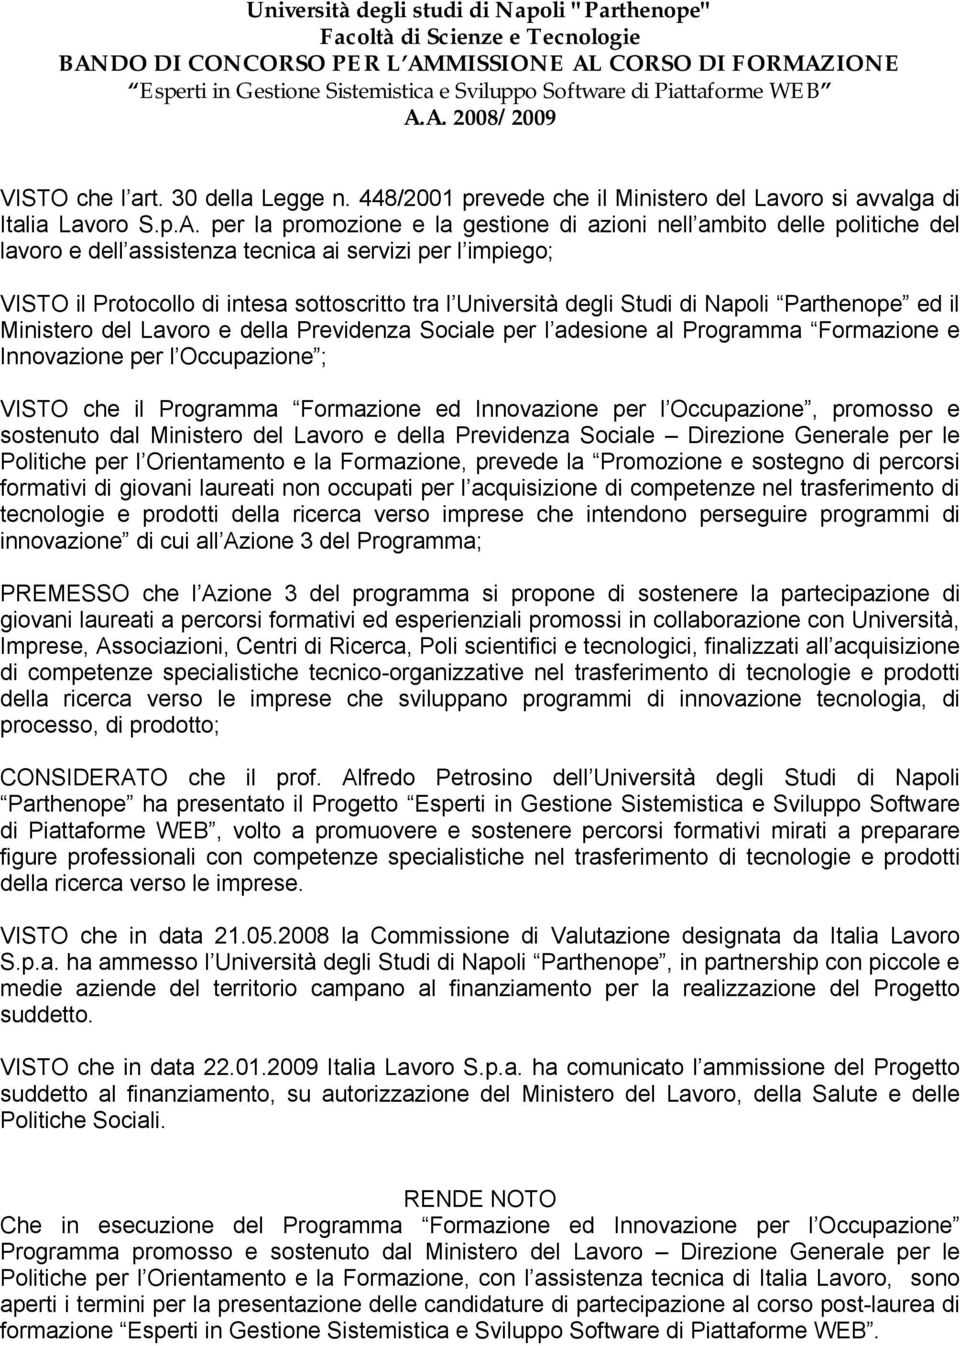 A. 2008/2009 VISTO che l art. 30 della Legge n. 448/2001 prevede che il Ministero del Lavoro si avvalga di Italia Lavoro S.p.A. per la promozione e la gestione di azioni nell ambito delle politiche